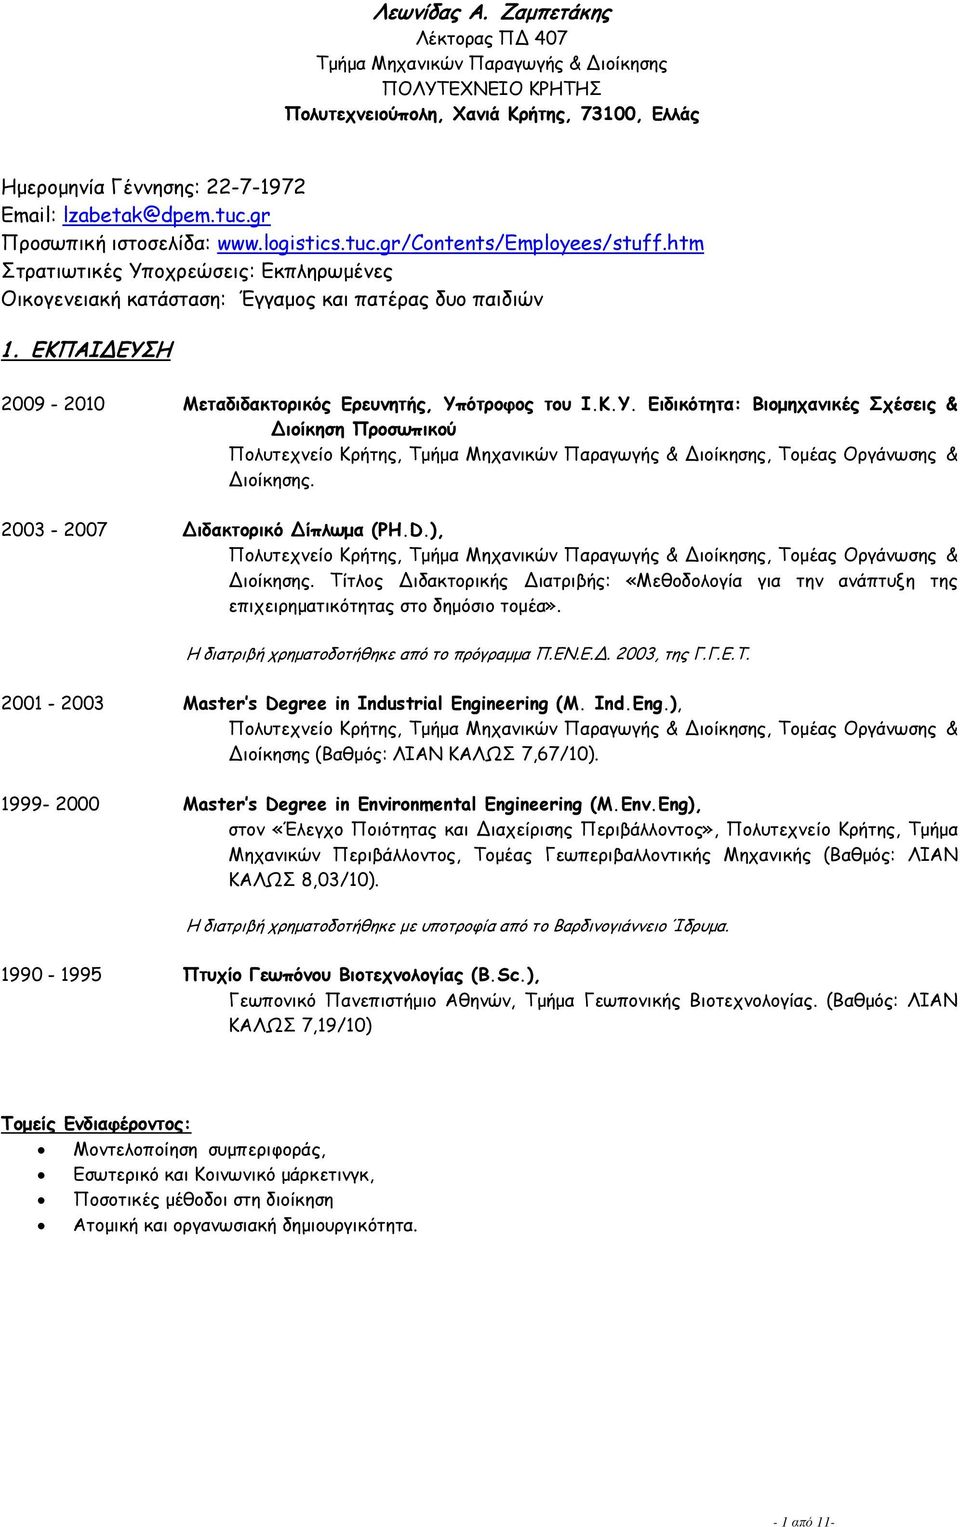 ΕΚΠΑΙΔΕΥΣΗ 2009-2010 Μεταδιδακτορικός Ερευνητής, Yπότροφος του Ι.Κ.Υ. Ειδικότητα: Βιομηχανικές Σχέσεις & Διοίκηση Προσωπικού Πολυτεχνείο Κρήτης, Τμήμα Μηχανικών Παραγωγής & Διοίκησης, Τομέας Οργάνωσης & Διοίκησης.